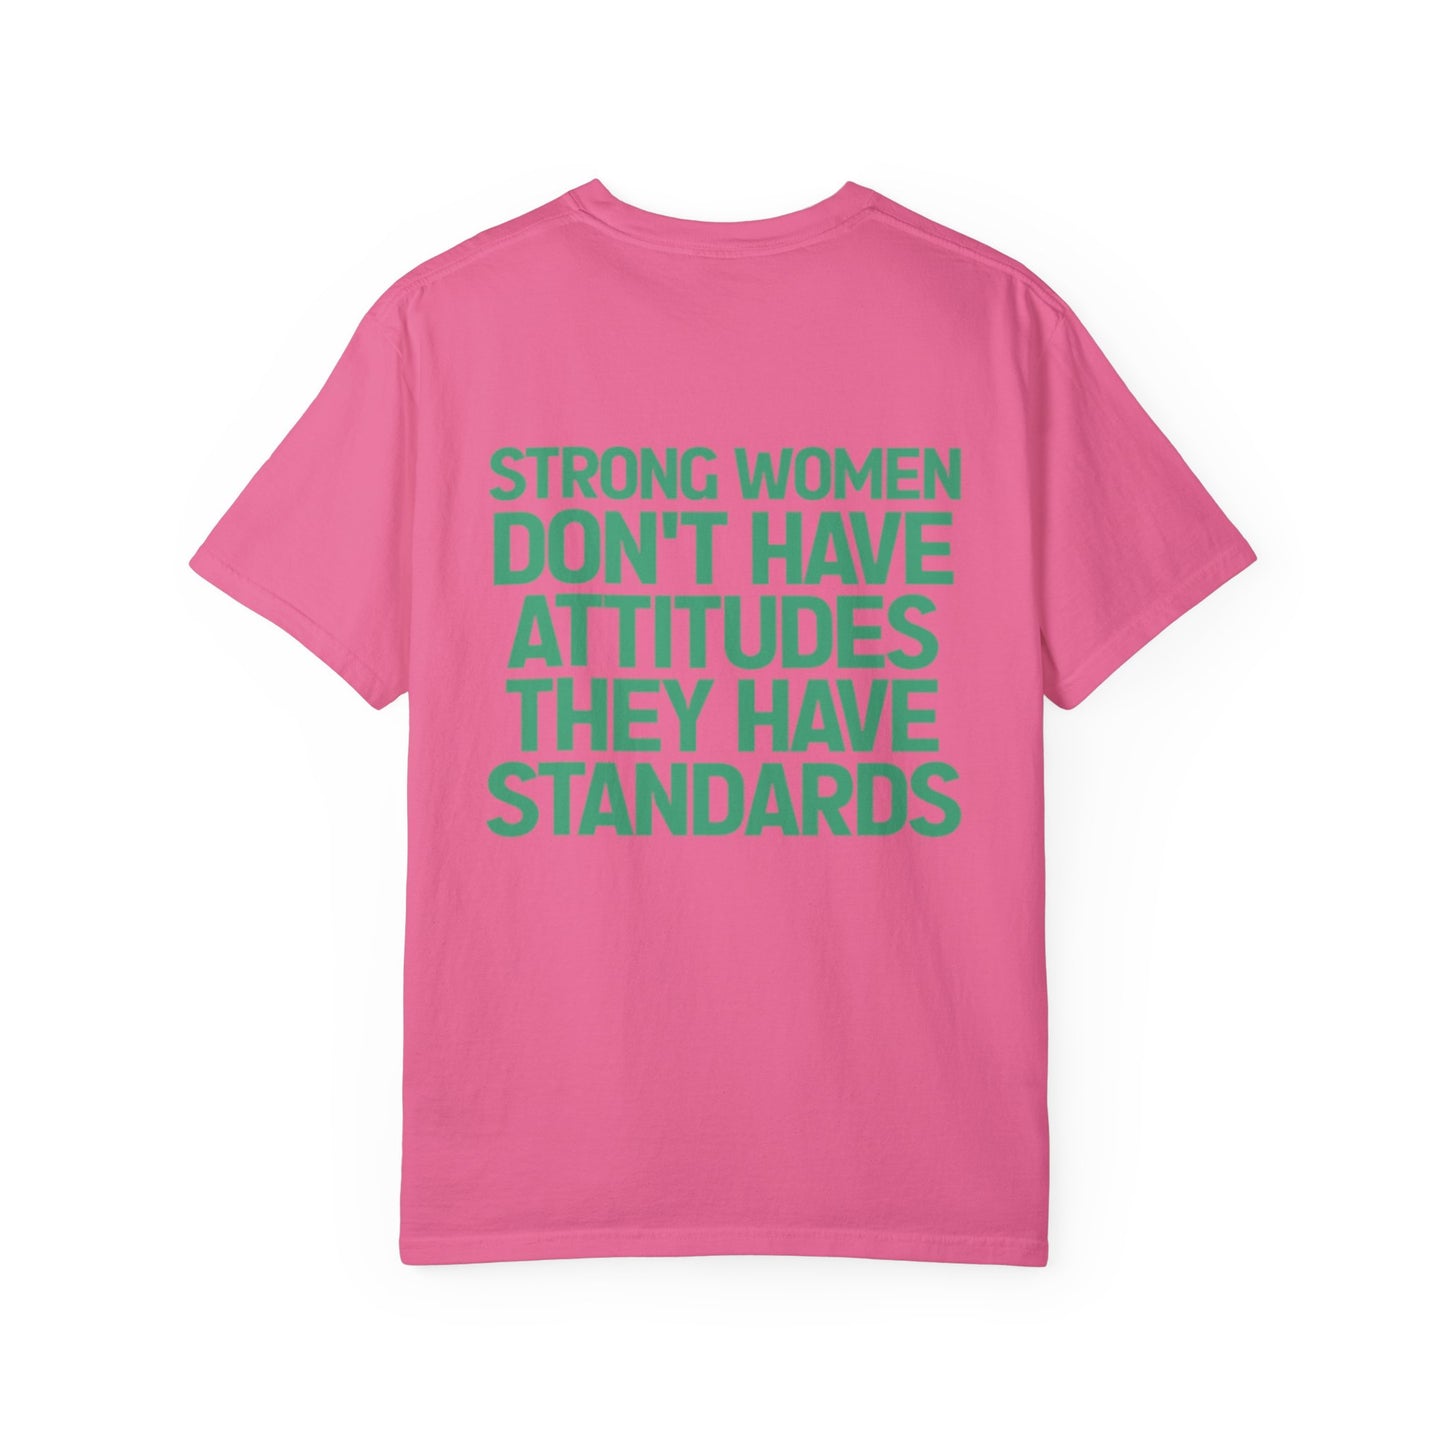 Standards T-shirt (Crunchberry)